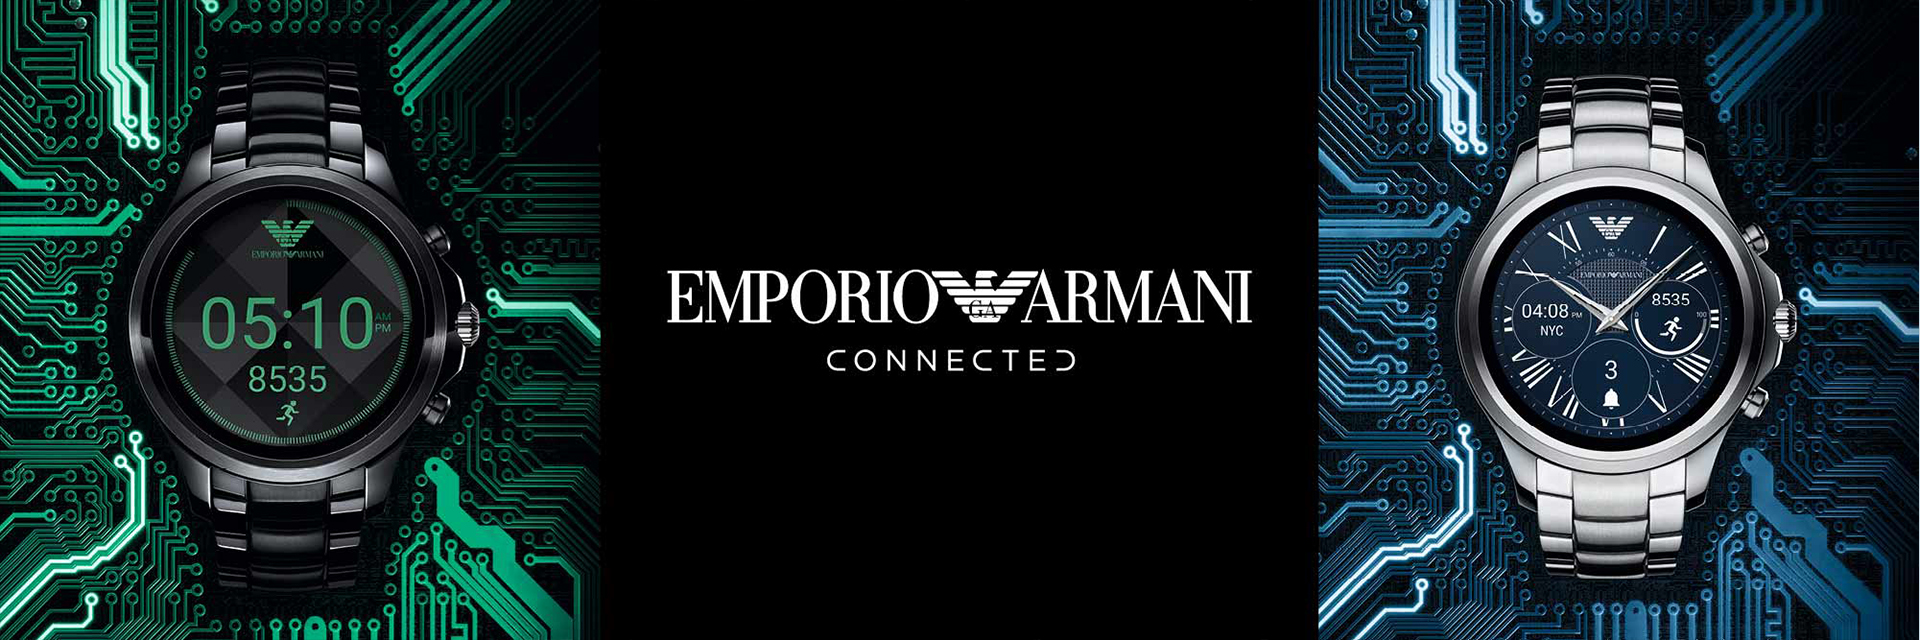 Emporio Armani Connected EA Connected